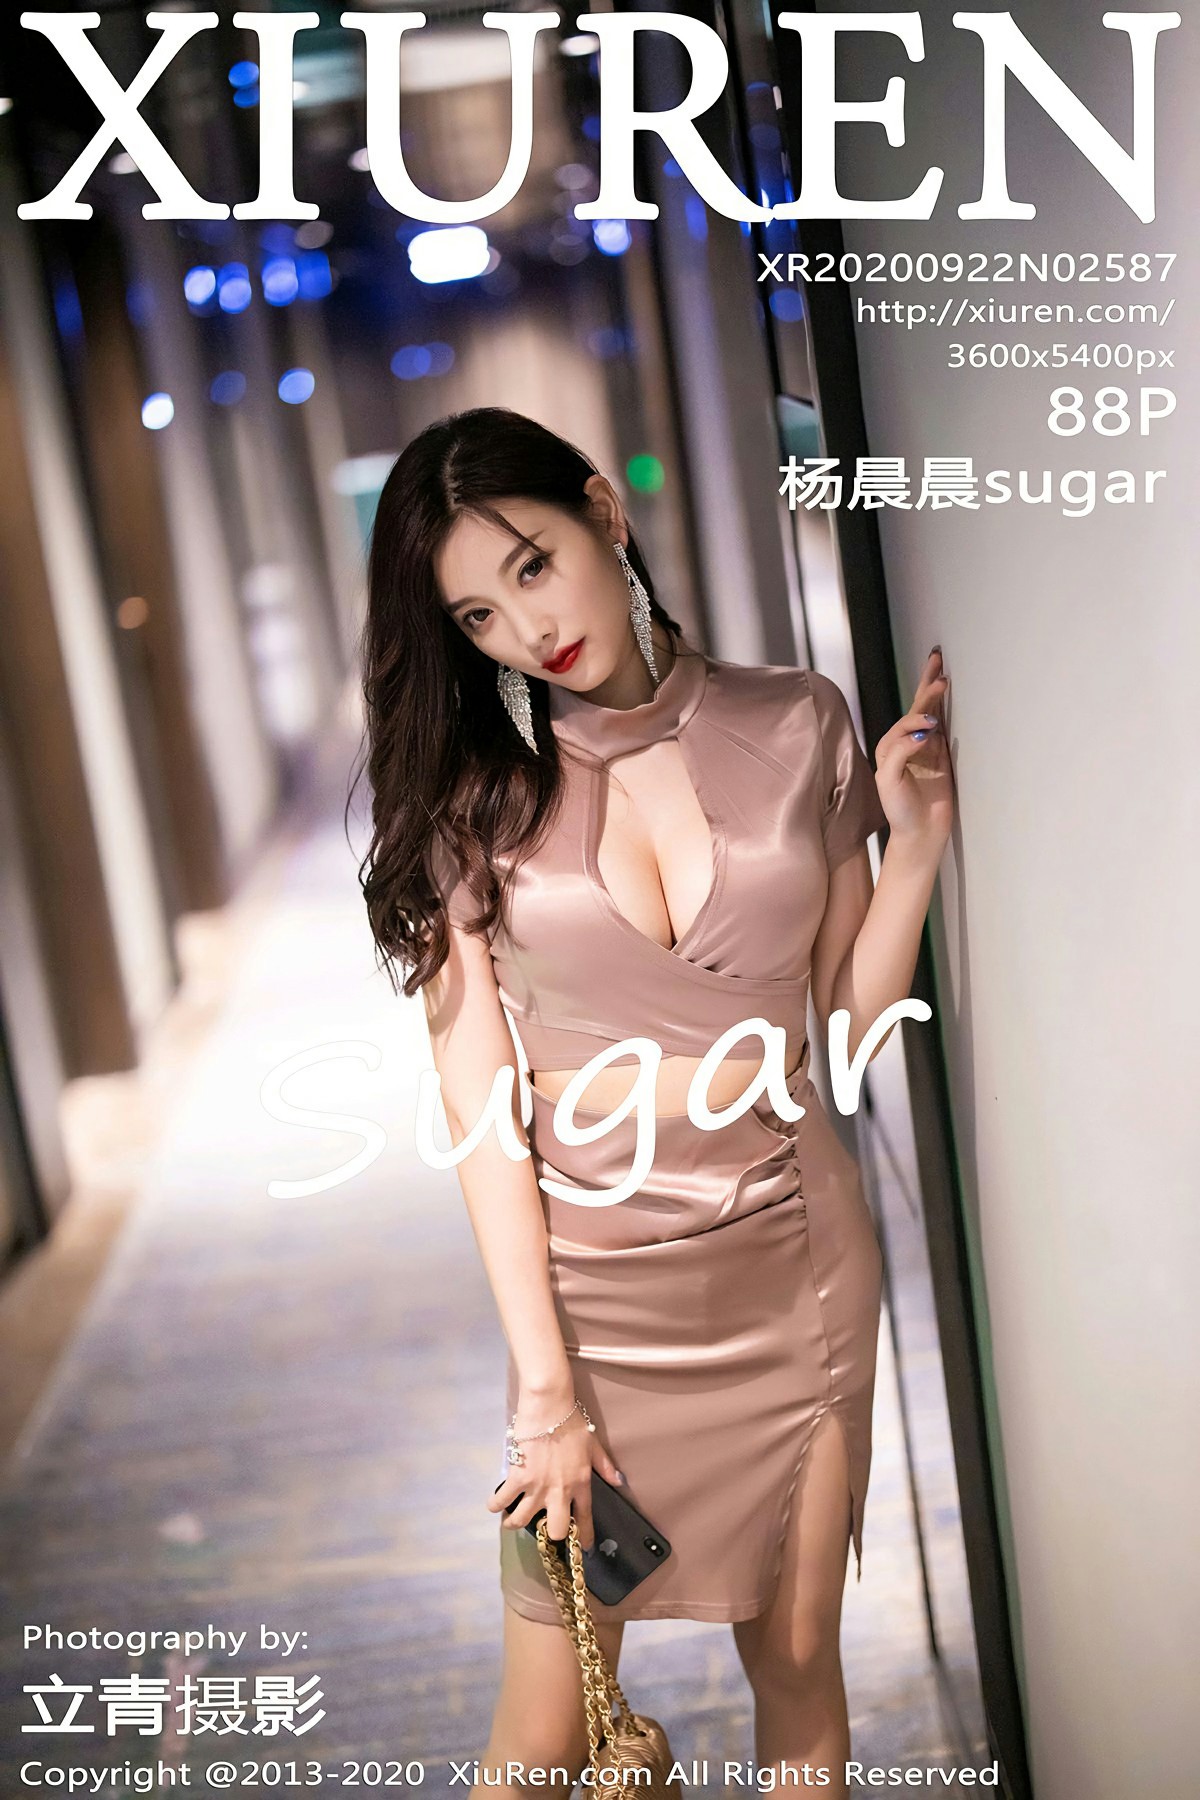 [XiuRen秀人网] 2020.09.22 No.2587 杨晨晨sugar